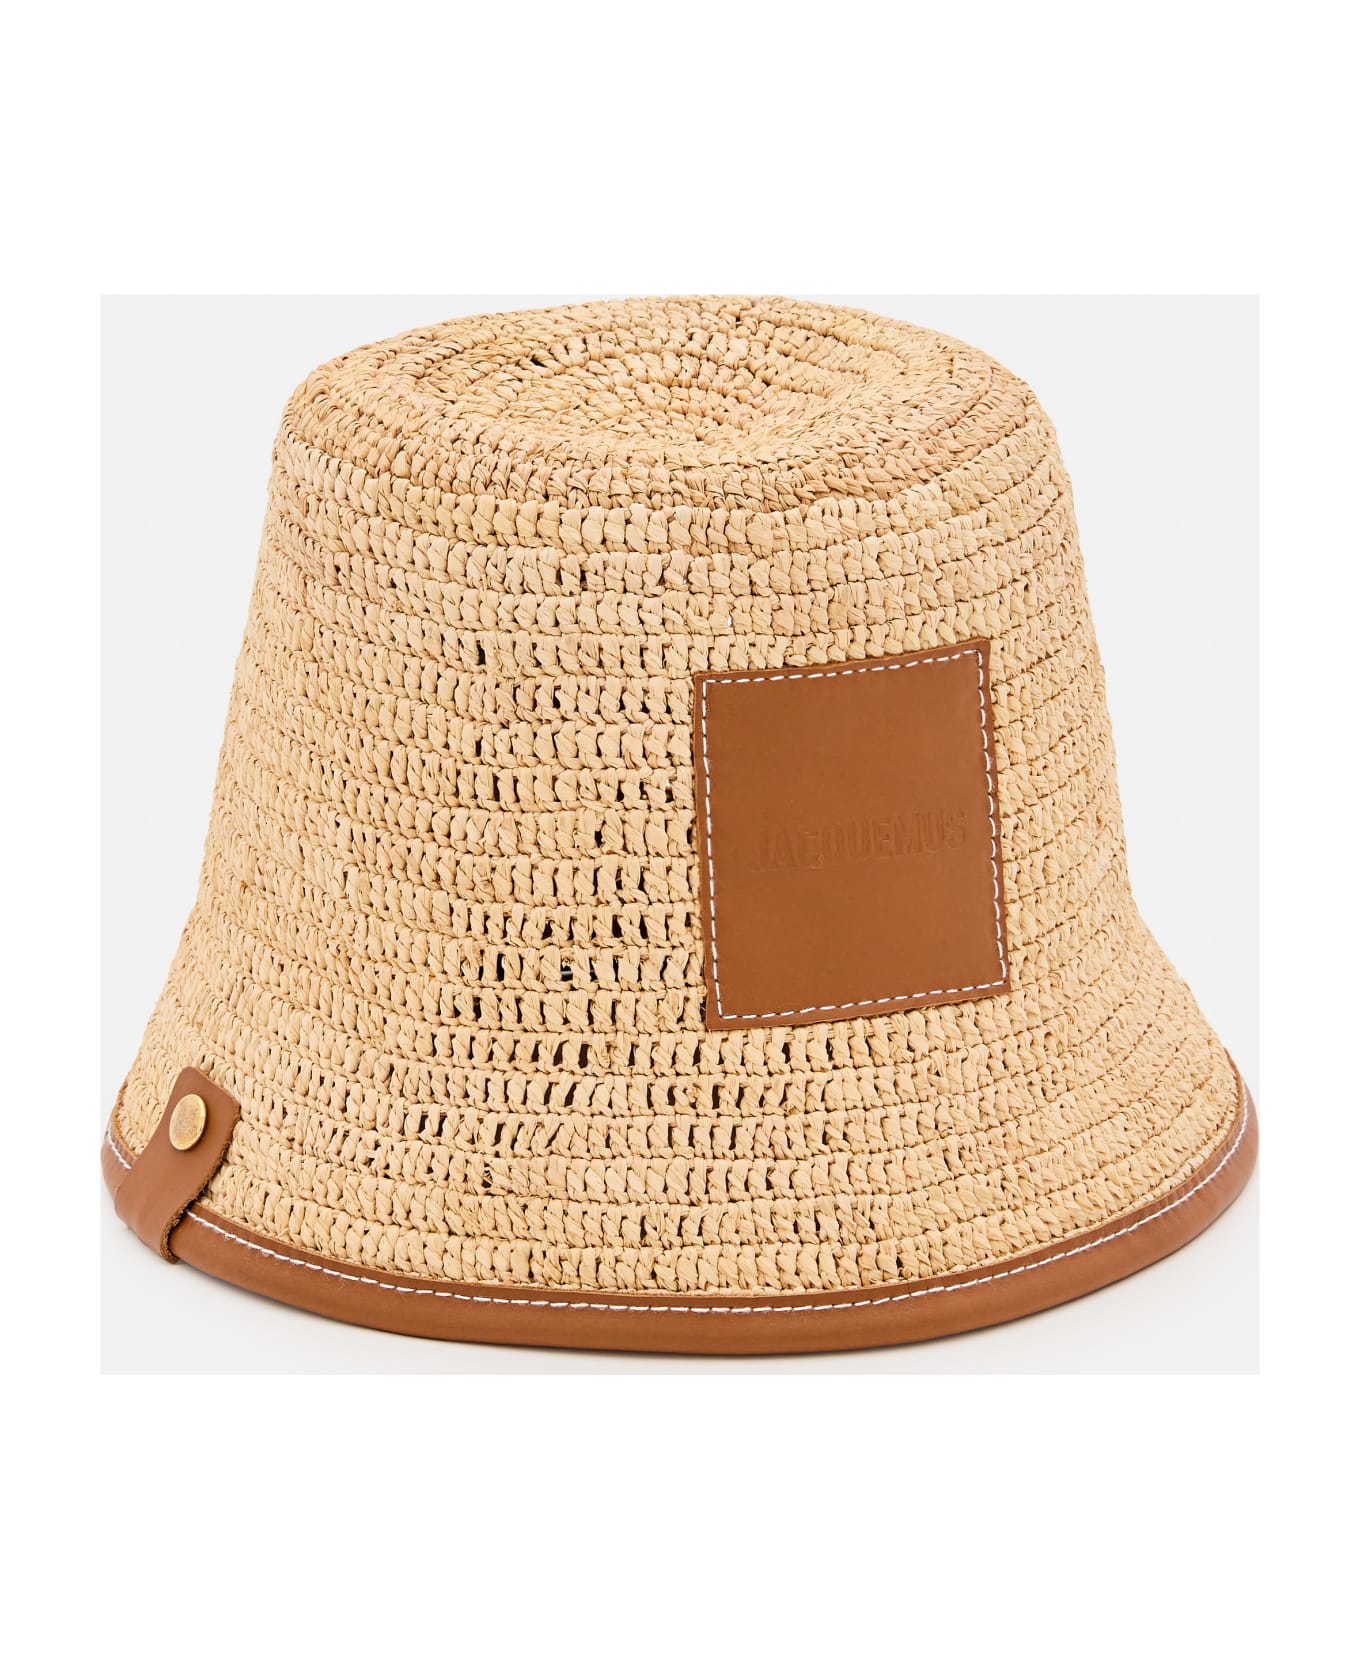 Jacquemus Le Bob Soli Raffia Hat - Light brown 2 帽子